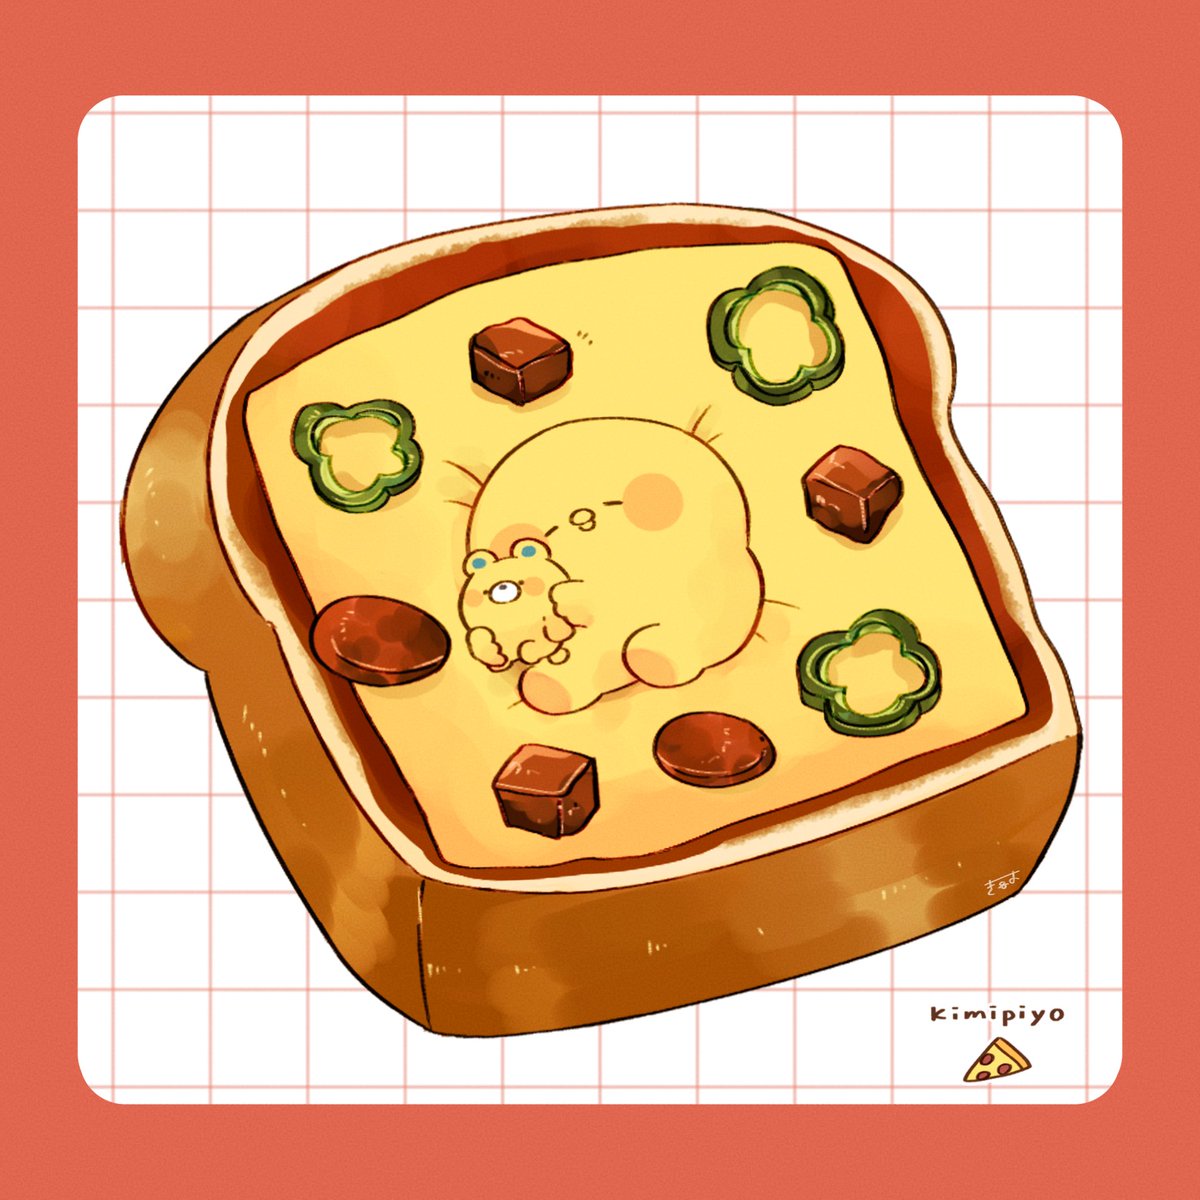 「ピザトースト#きみピヨ 」|てんみやきよのイラスト